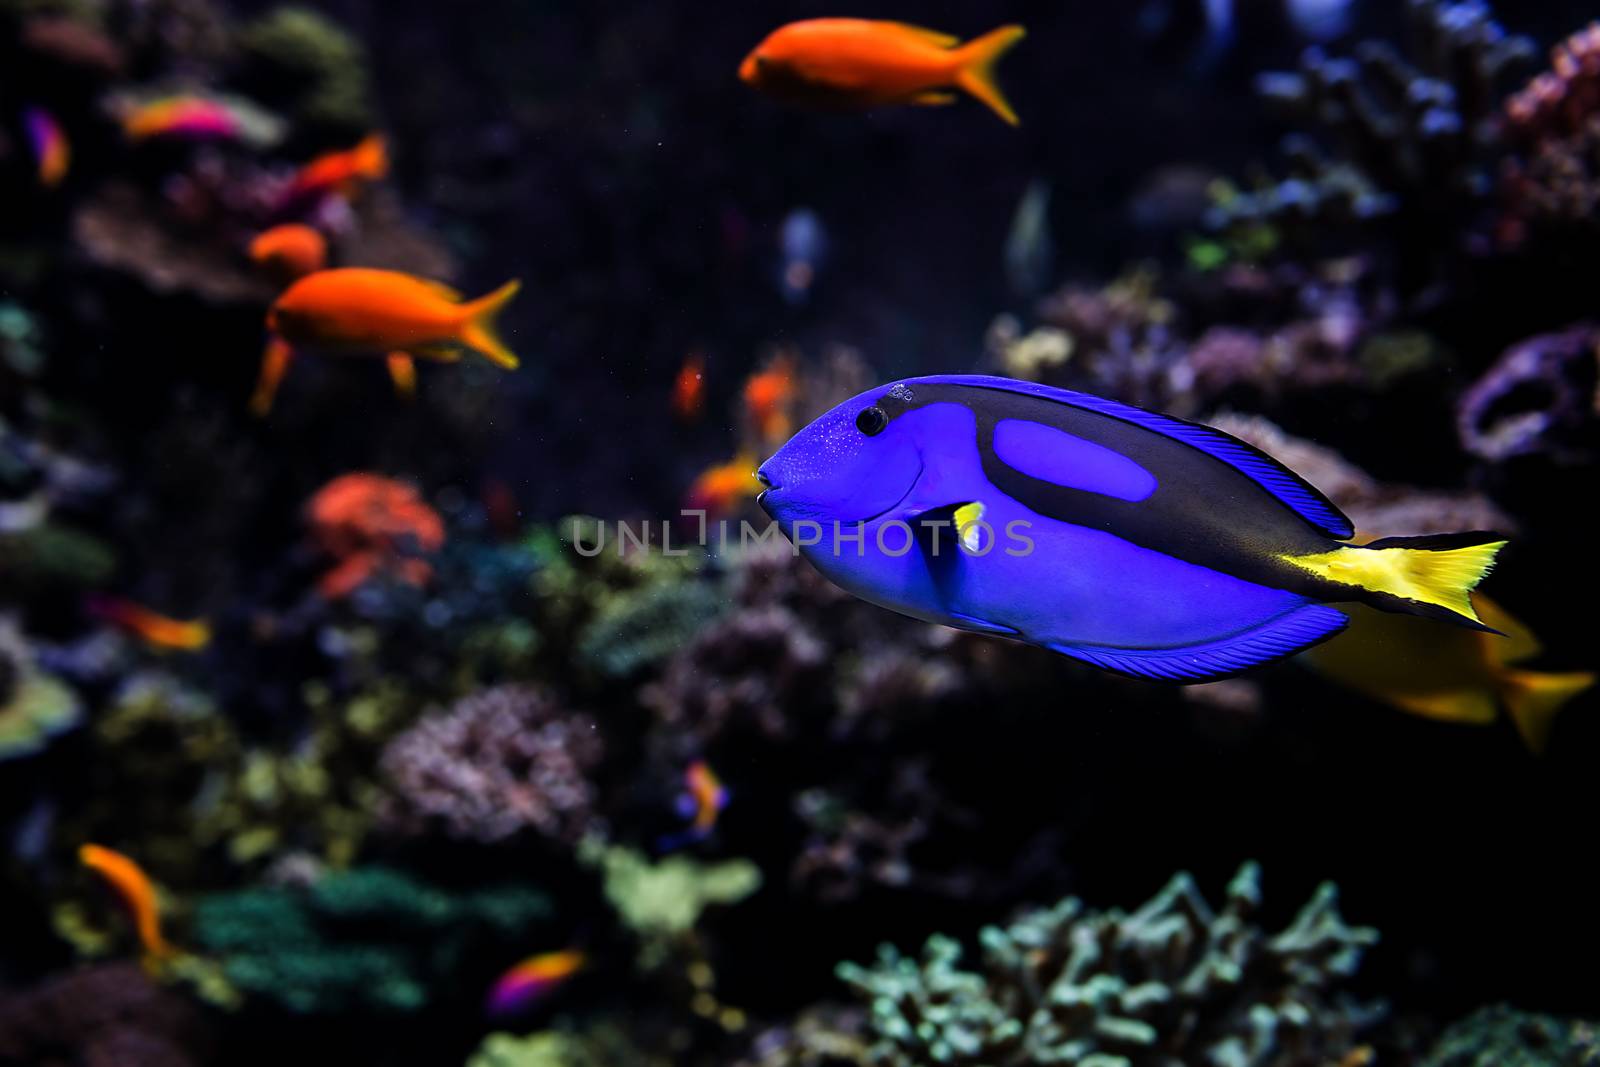 Aquarium fish by thisisdraft